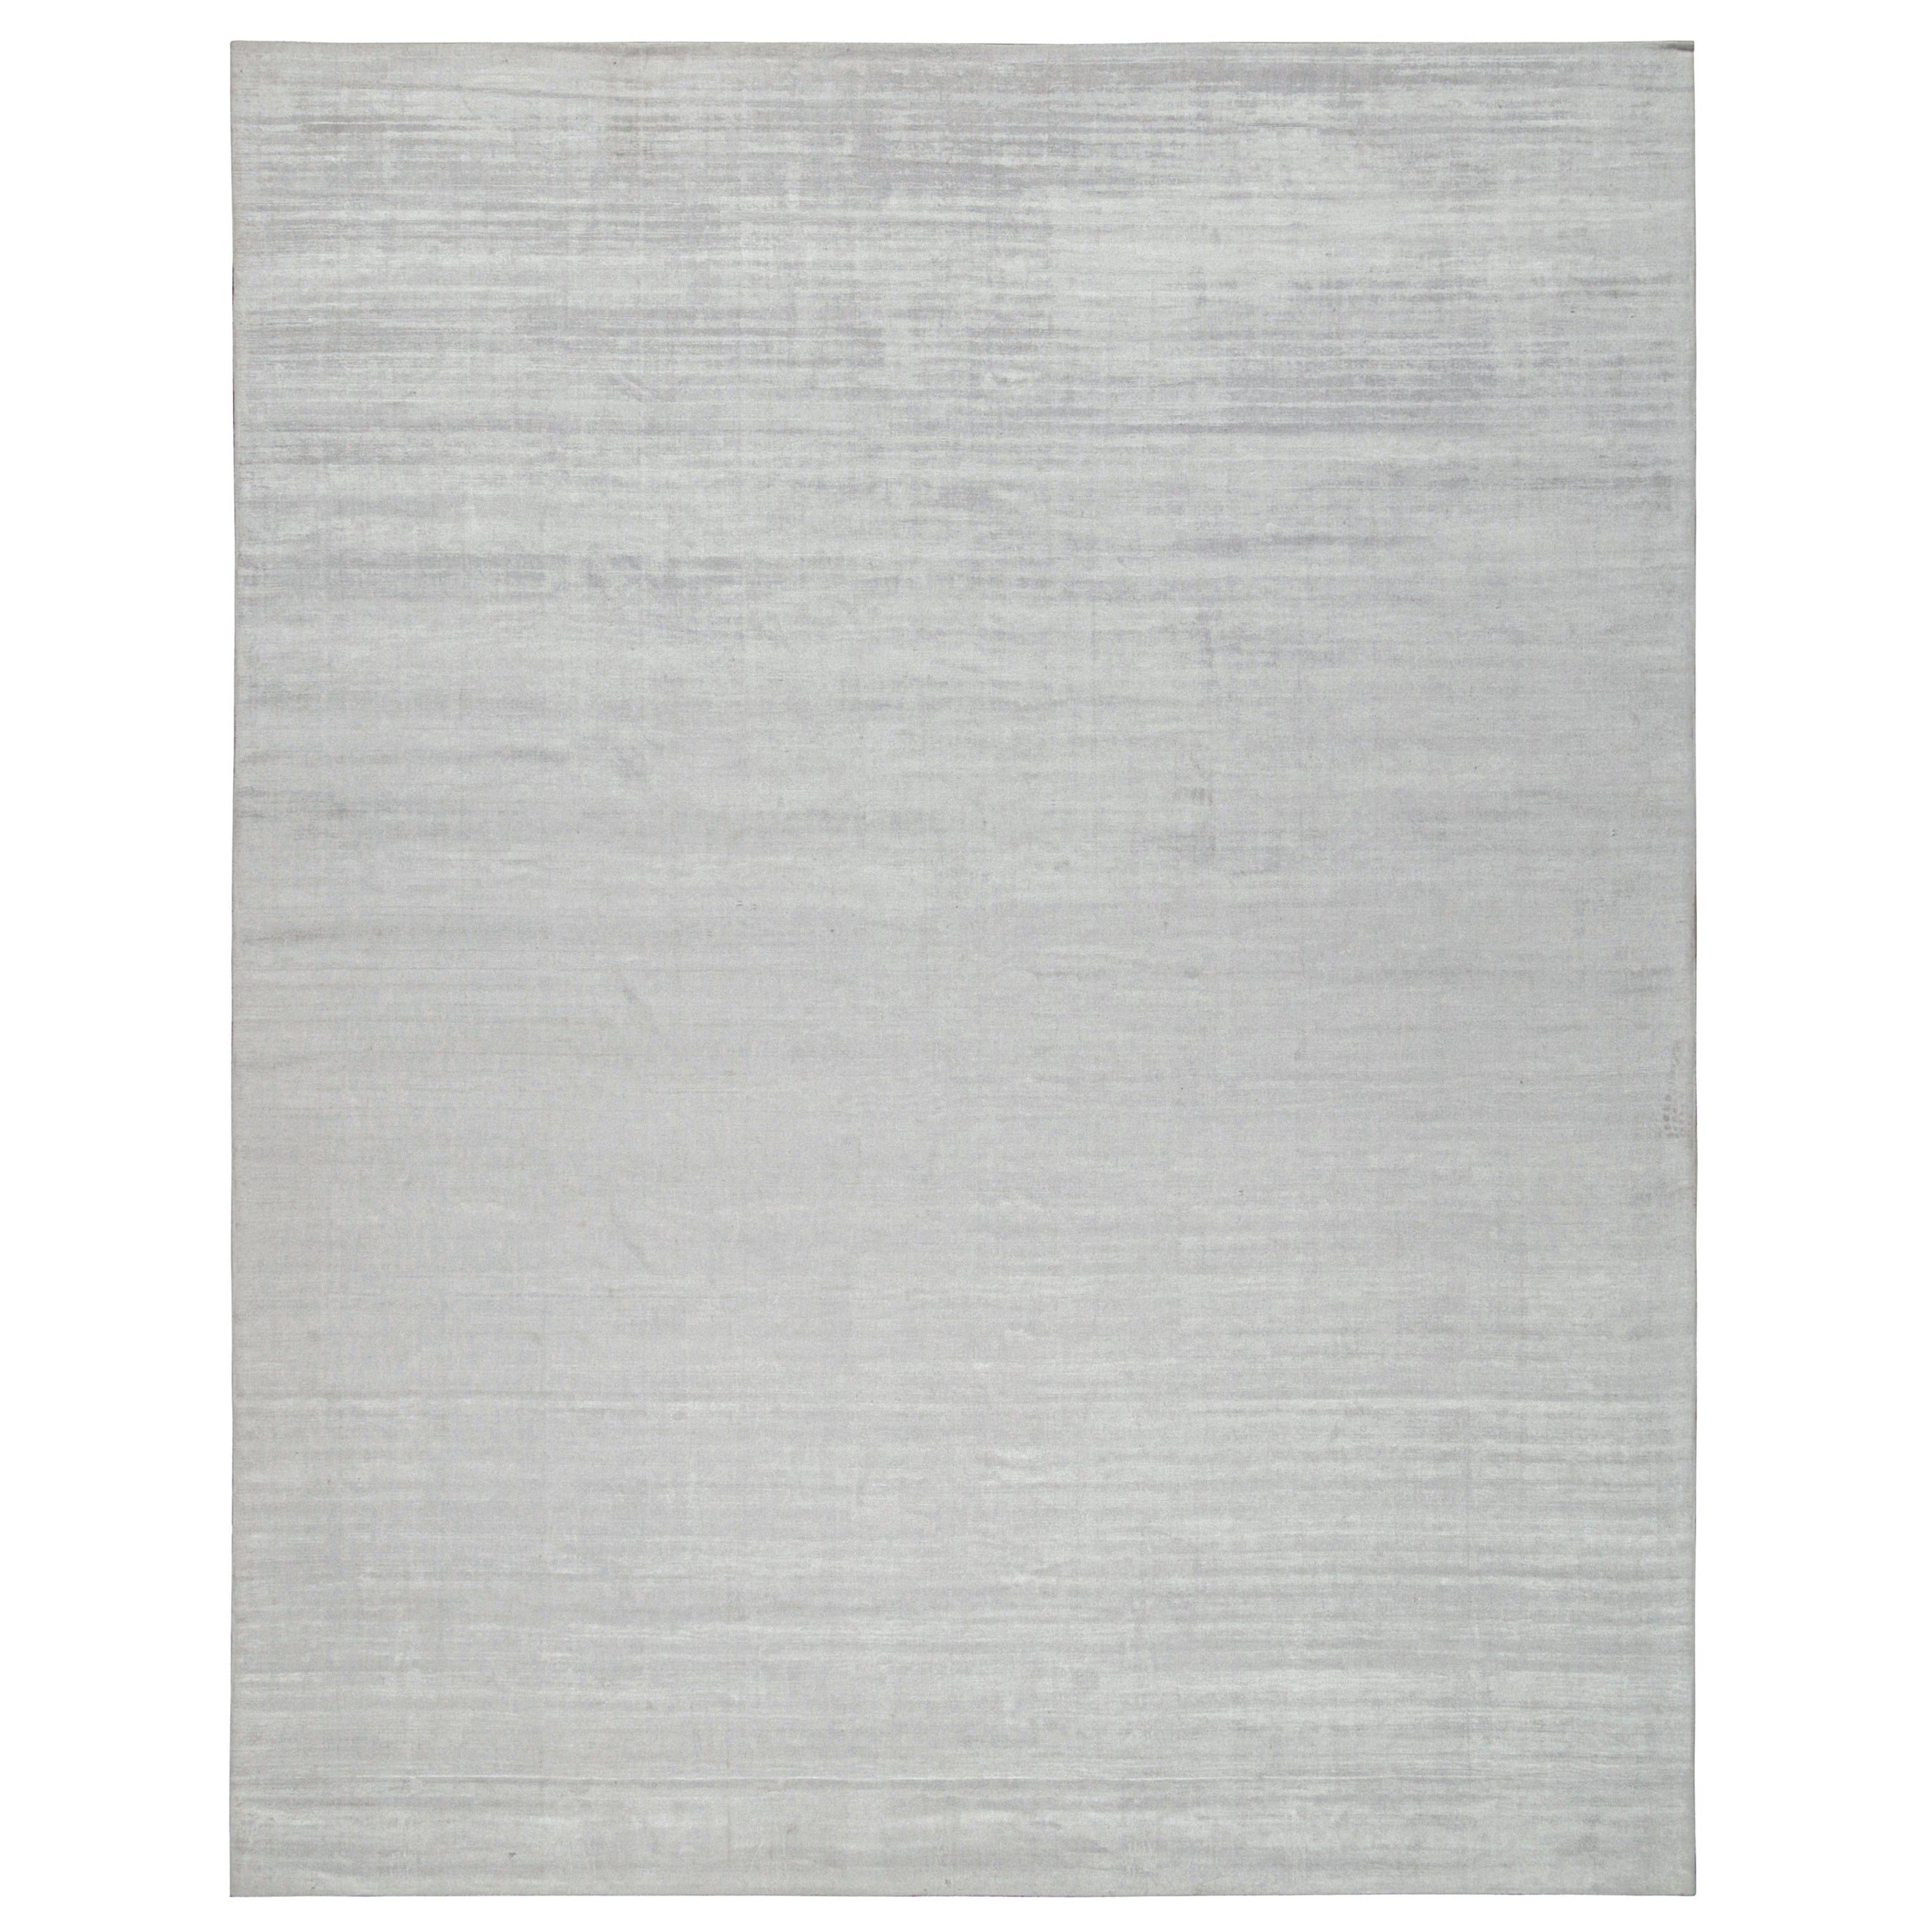 Rug & Kilim's Modern Rug in Solid Grey and Off-White Striae (tapis moderne avec des rayures en gris uni et en blanc cassé) en vente